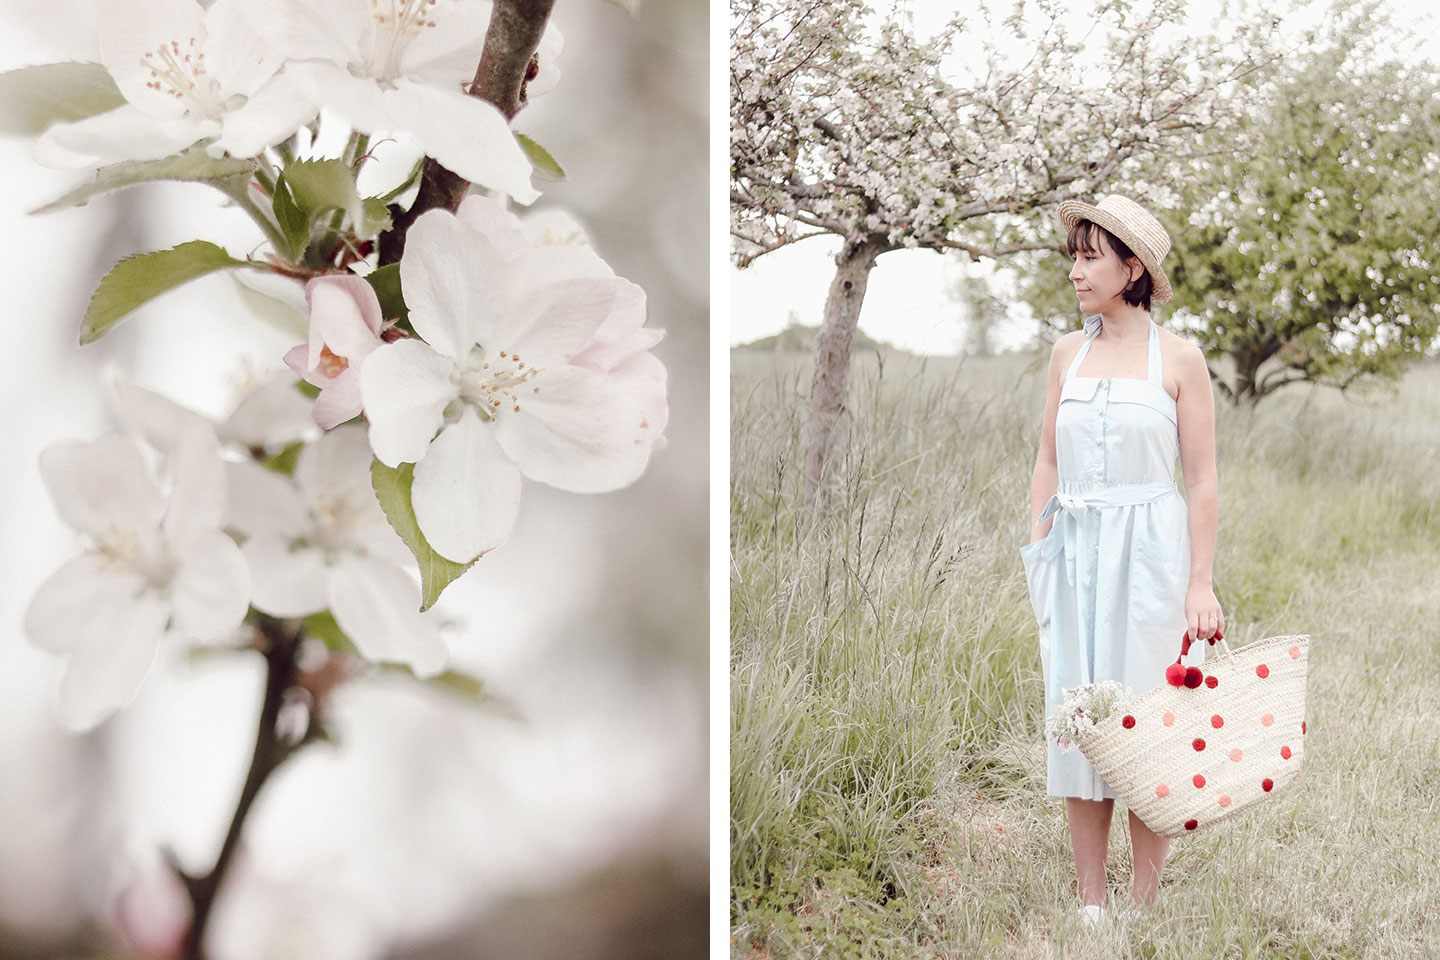 Aujourd'hui je vous retrouve avec un petit look estival et confortable avec cette petite robe rétro aux milieu des pommiers en fleurs d'Oléron. - Cliquez pour découvrir l'article